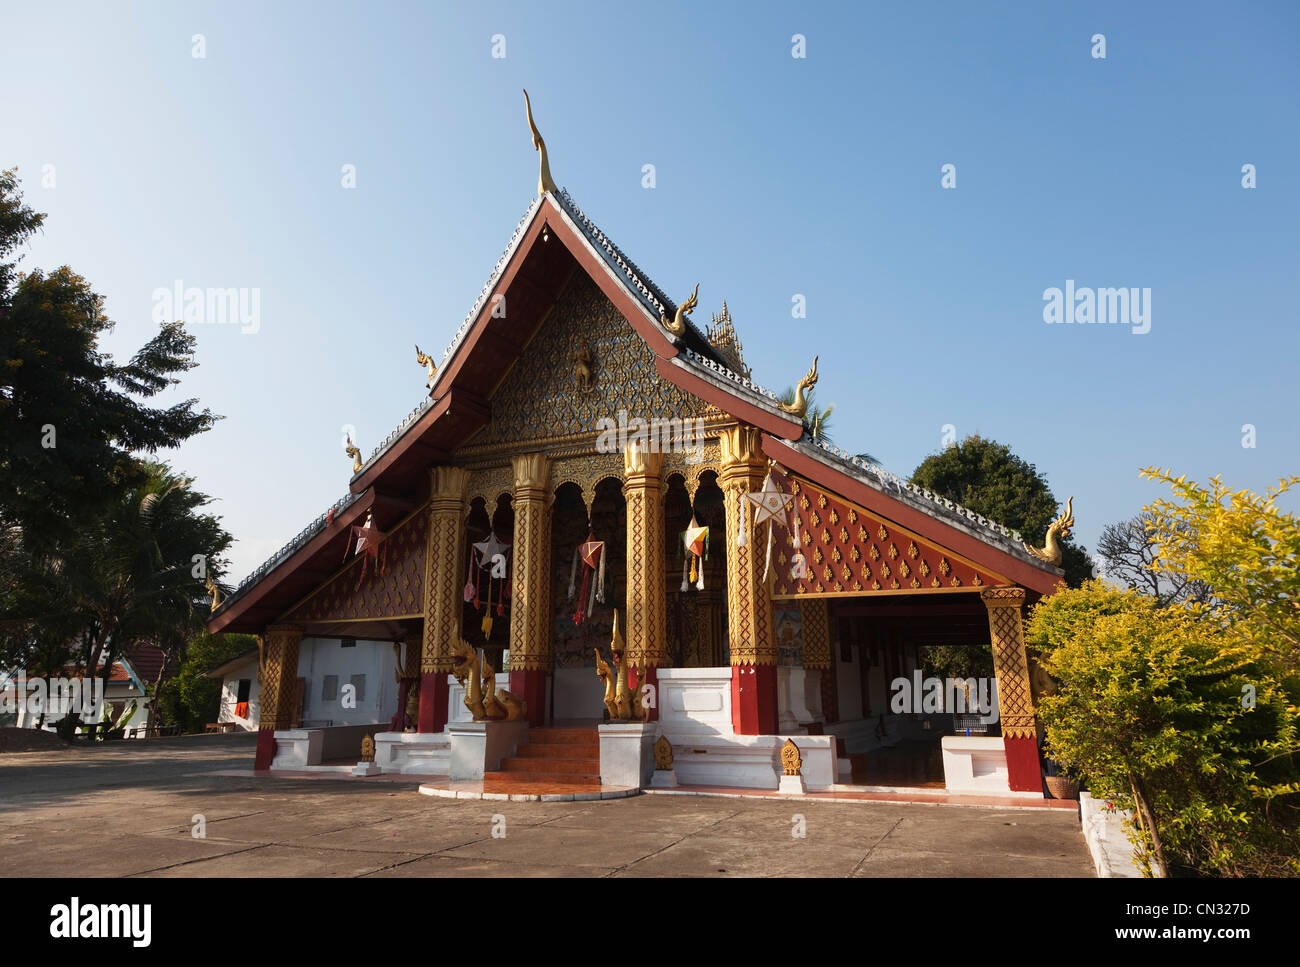 Wat Hosian temple, Luang Prabang, Laos PDR Stock Photo